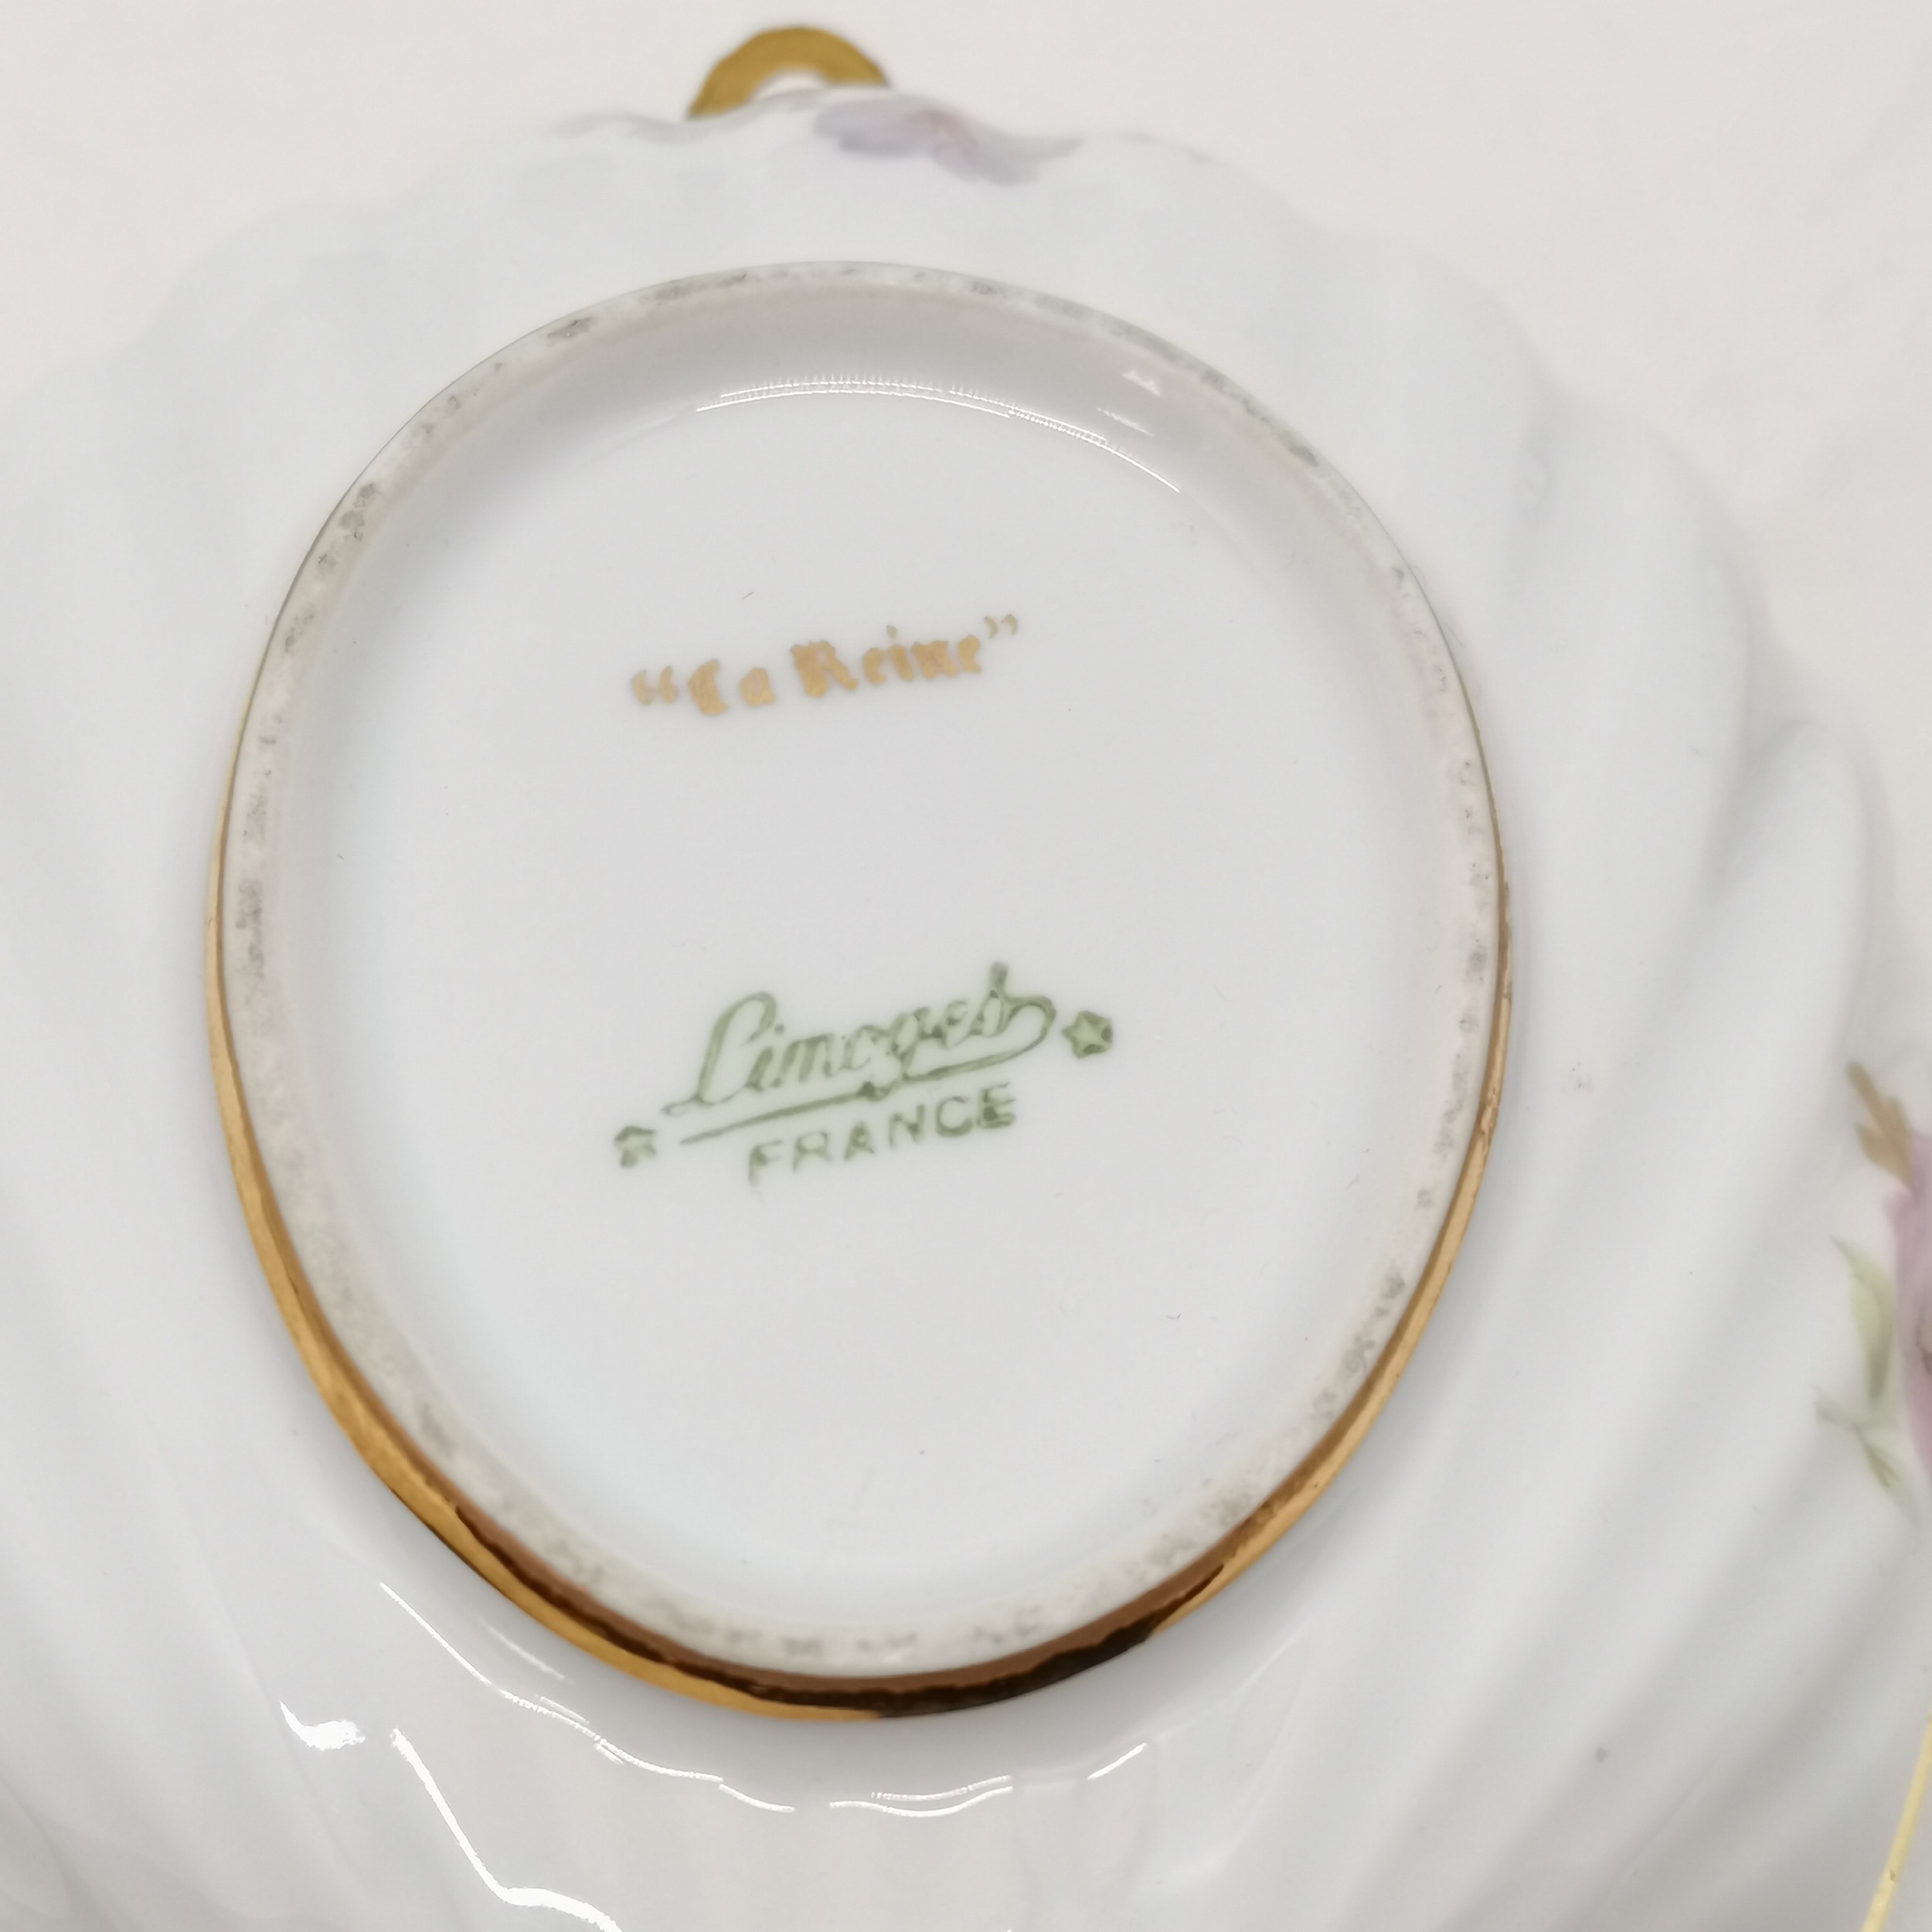 De La Reine porcelain pot pourri pot 10 cm wide x 9 cm high, De La Reine basket, t/w a Limoges - Image 4 of 6